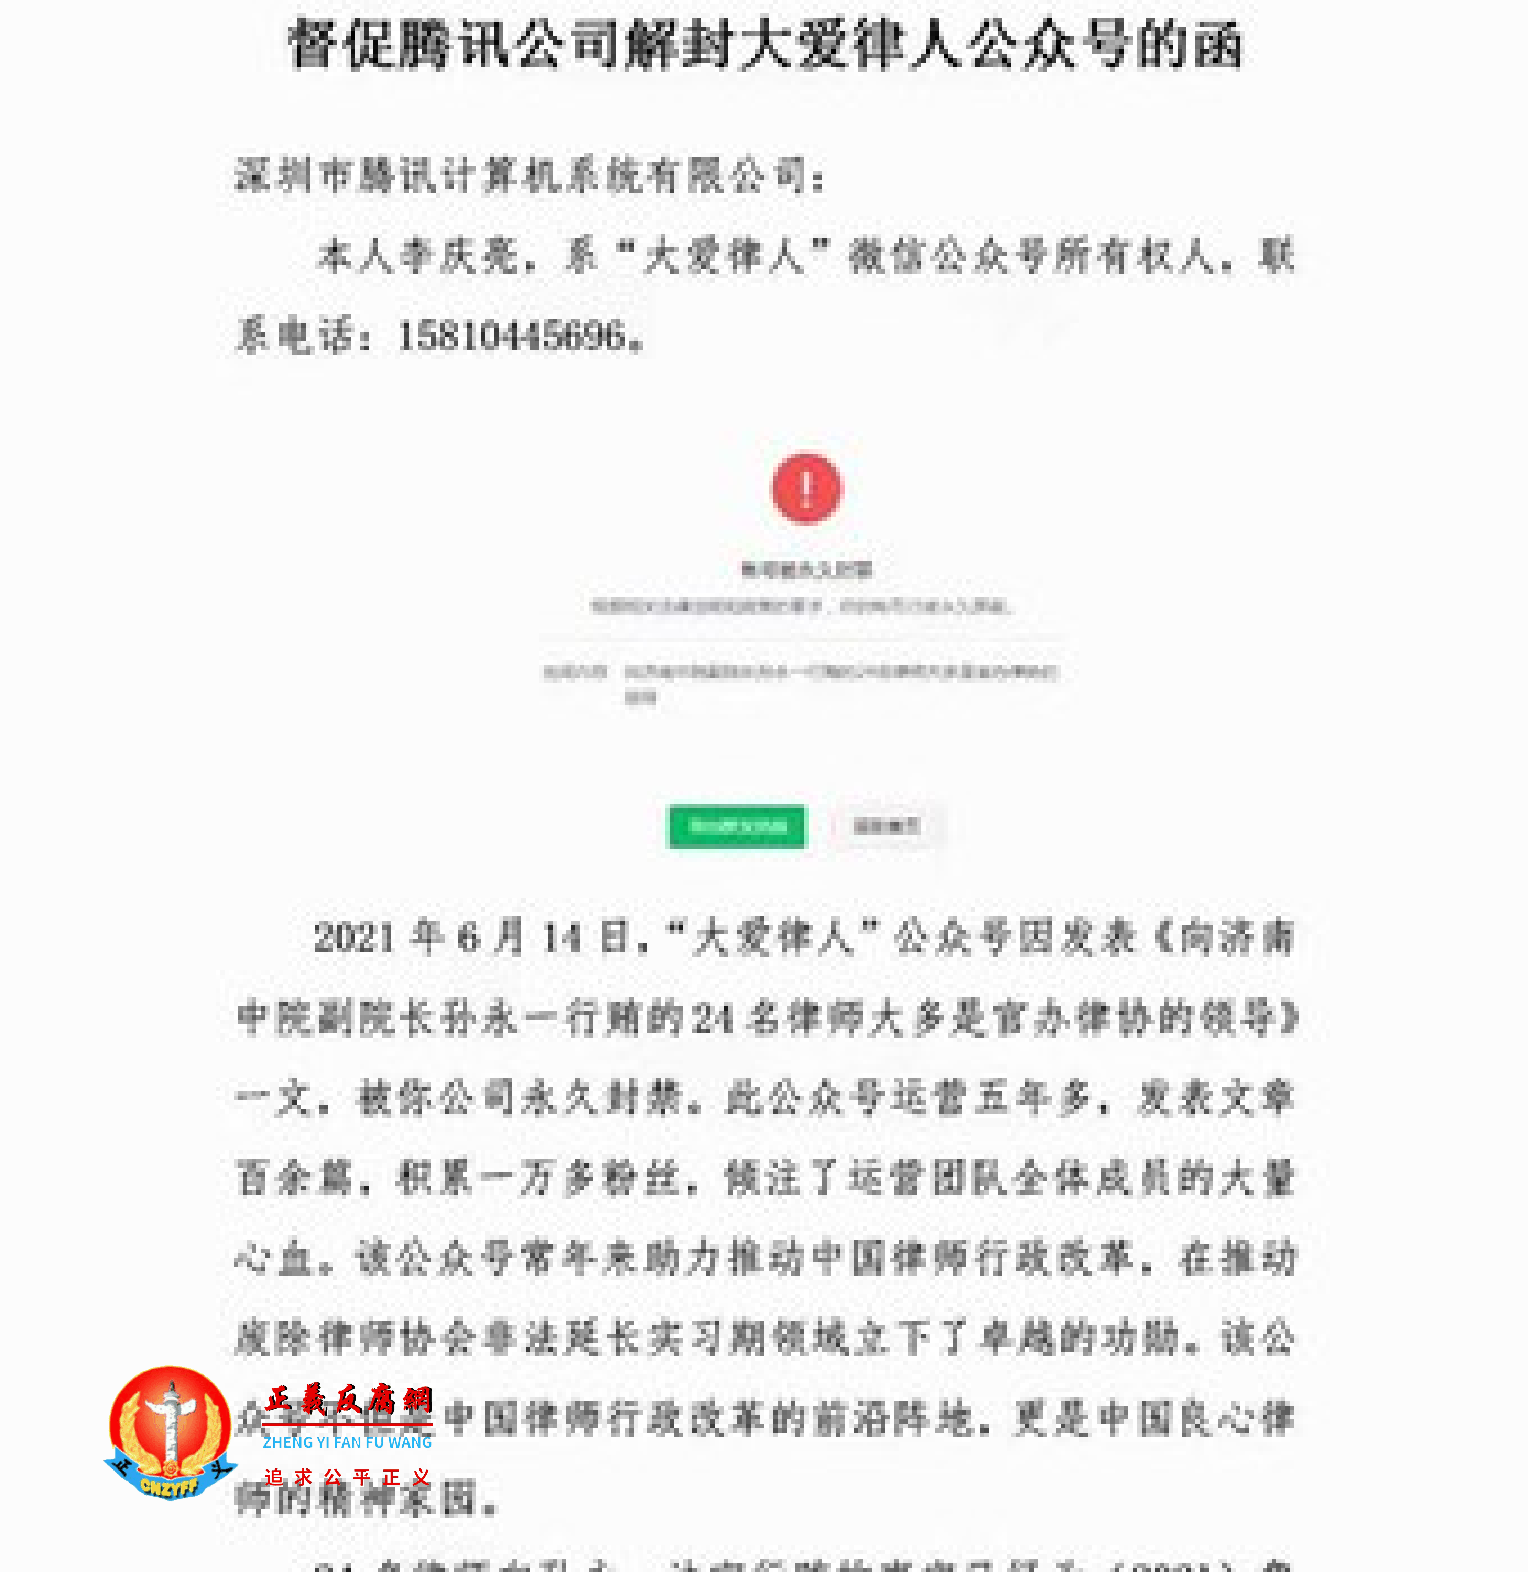 公众号注册人李庆亮督促腾讯公司解封公众号的信函.png